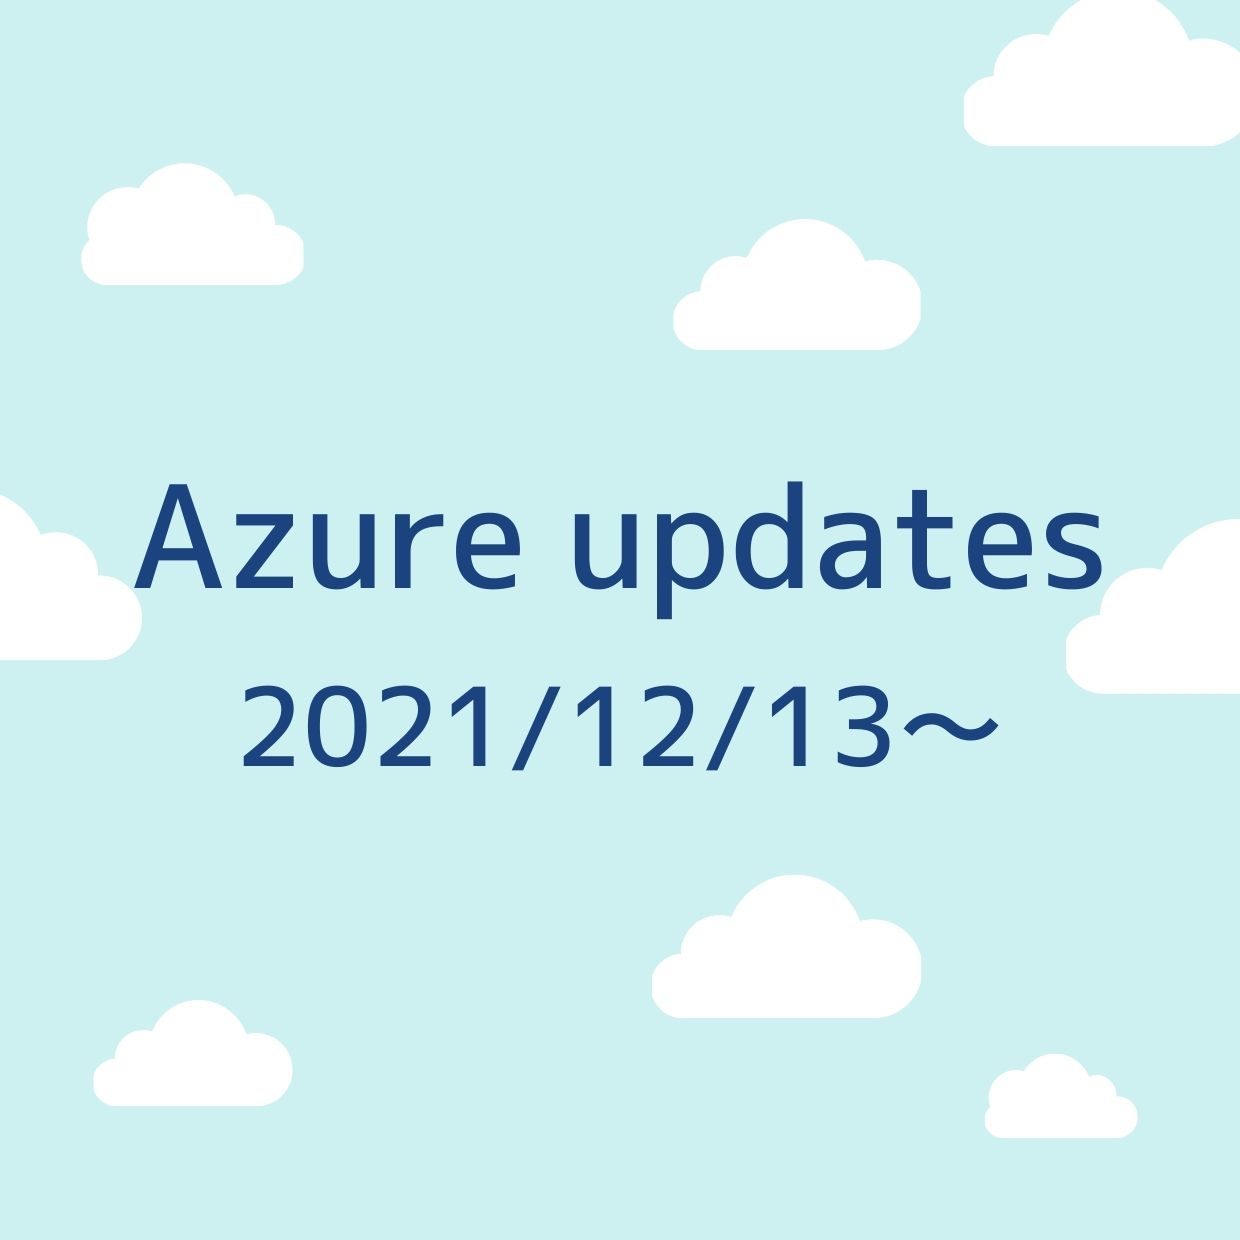 2021/12/13週の Azure updates 日本語速報